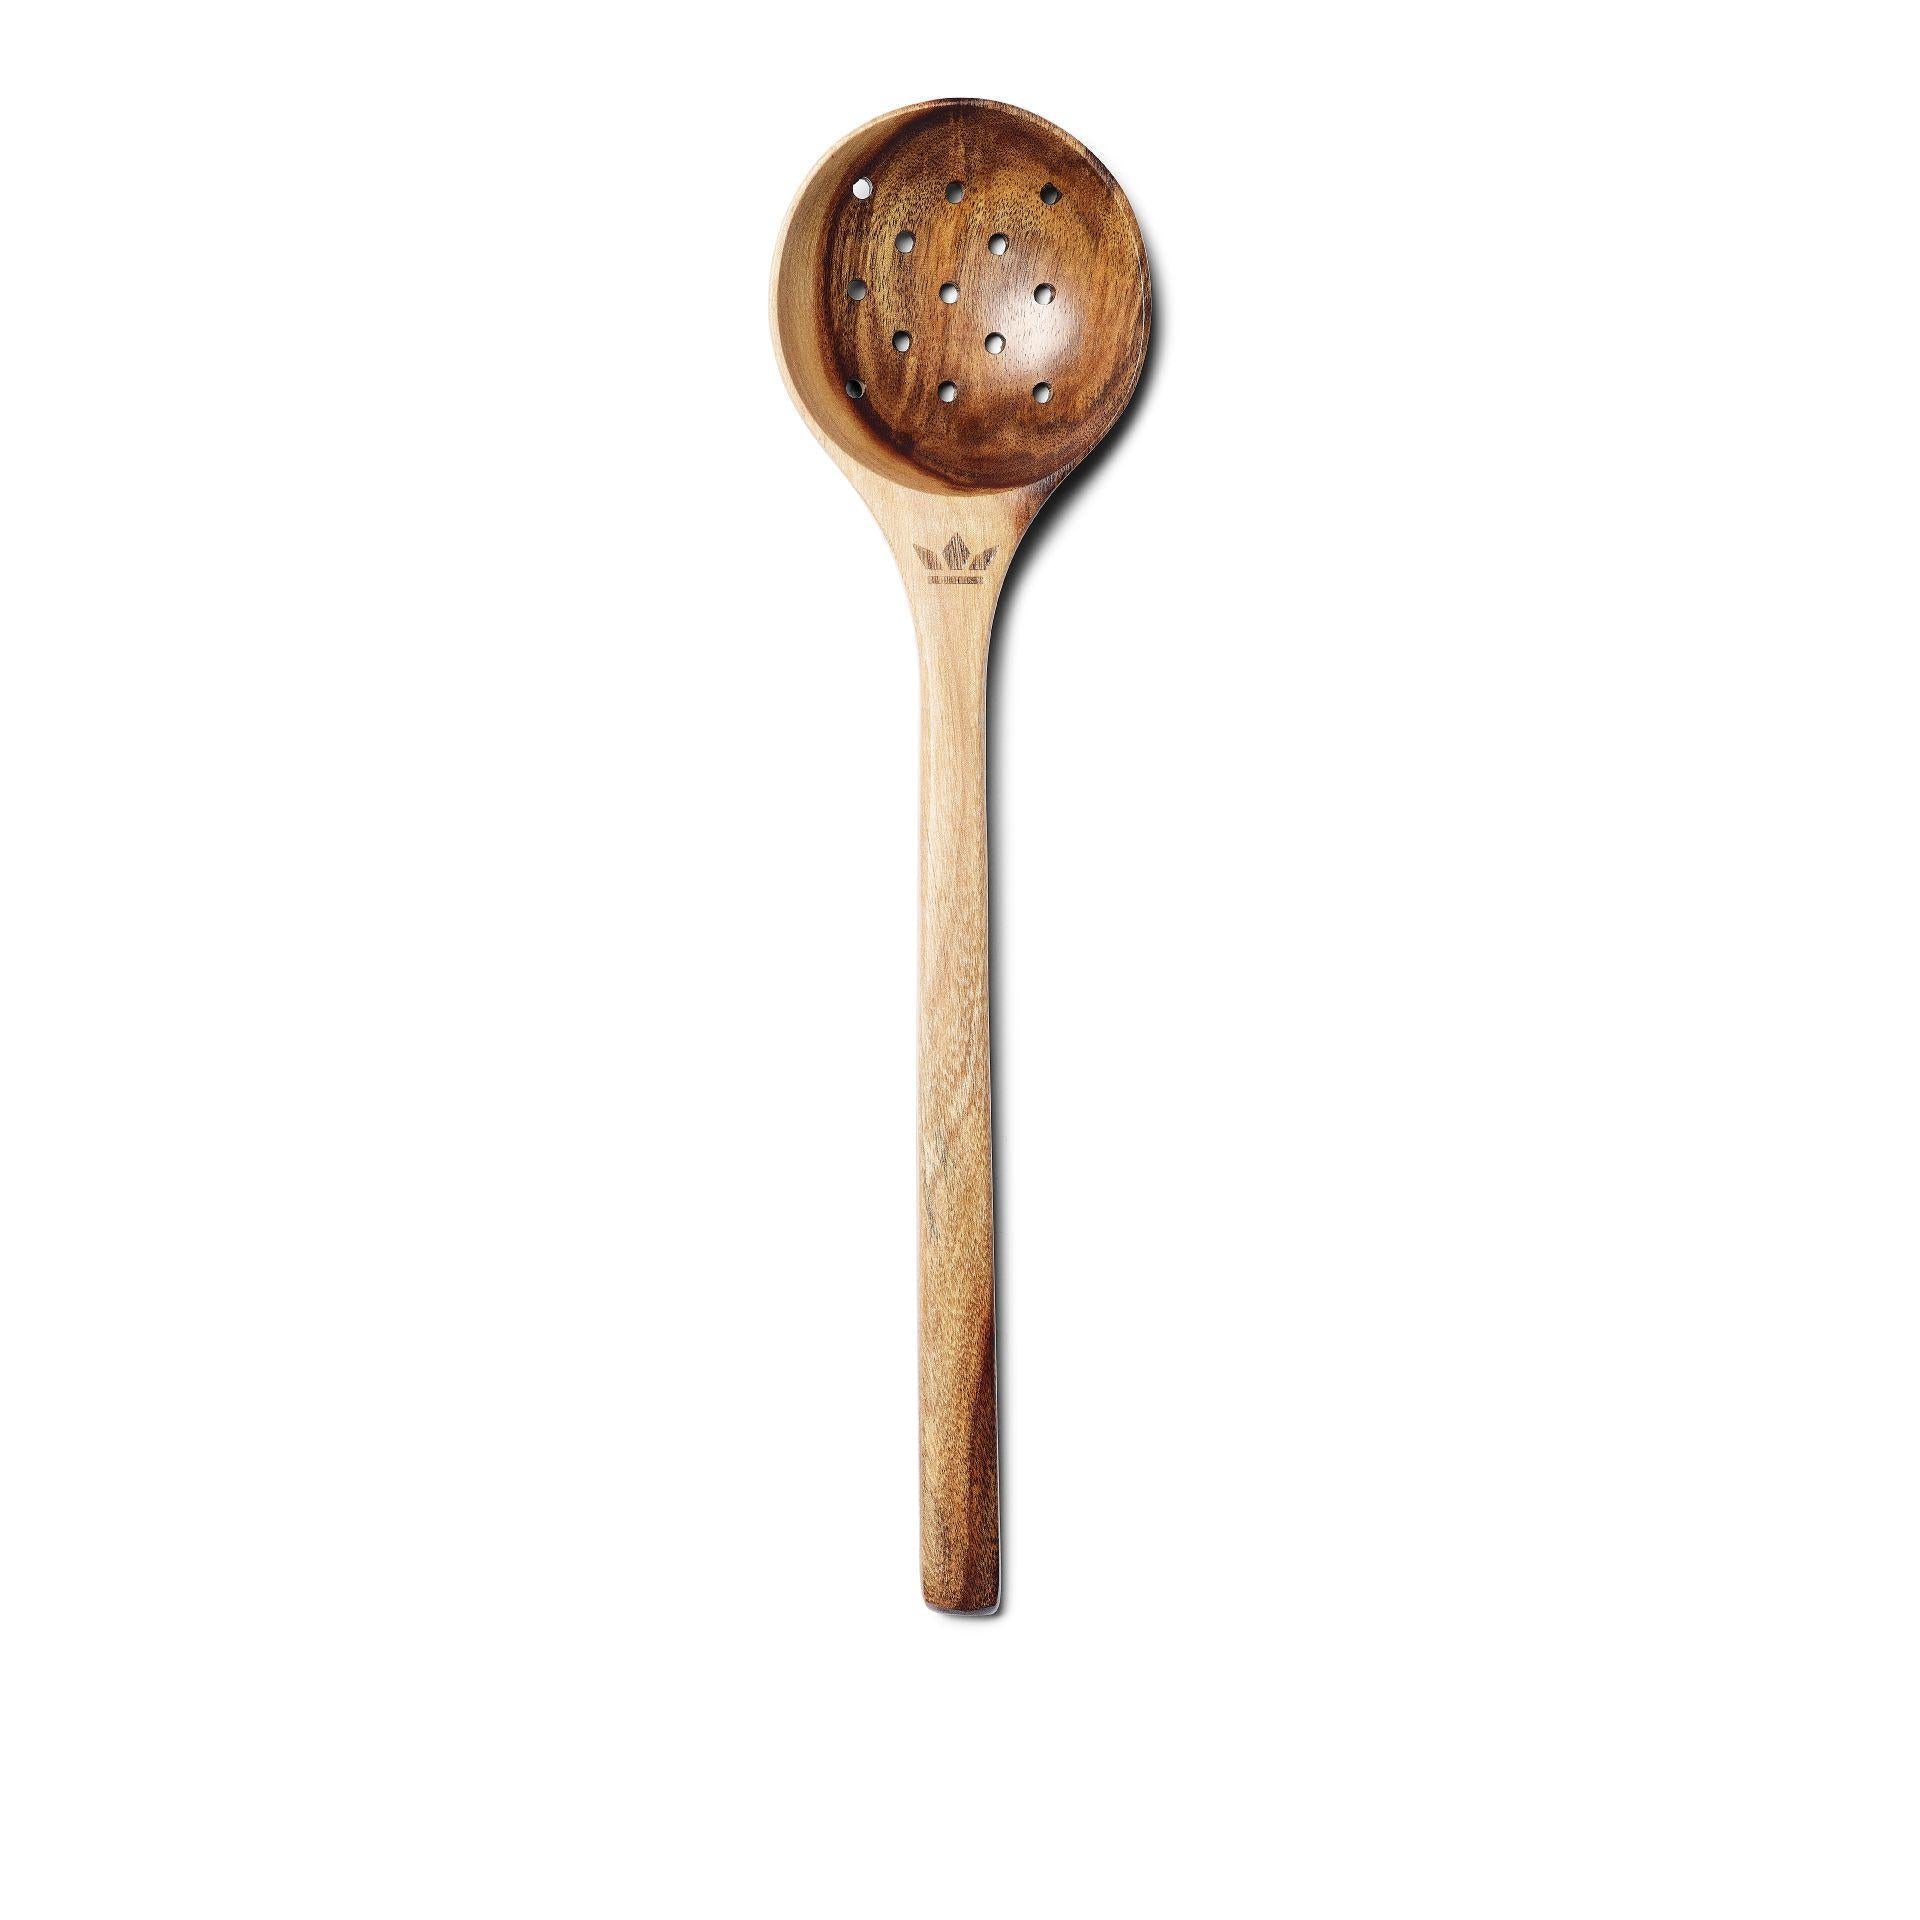 Dutchdeluxes Wooden Utensils Skimmer Spoon